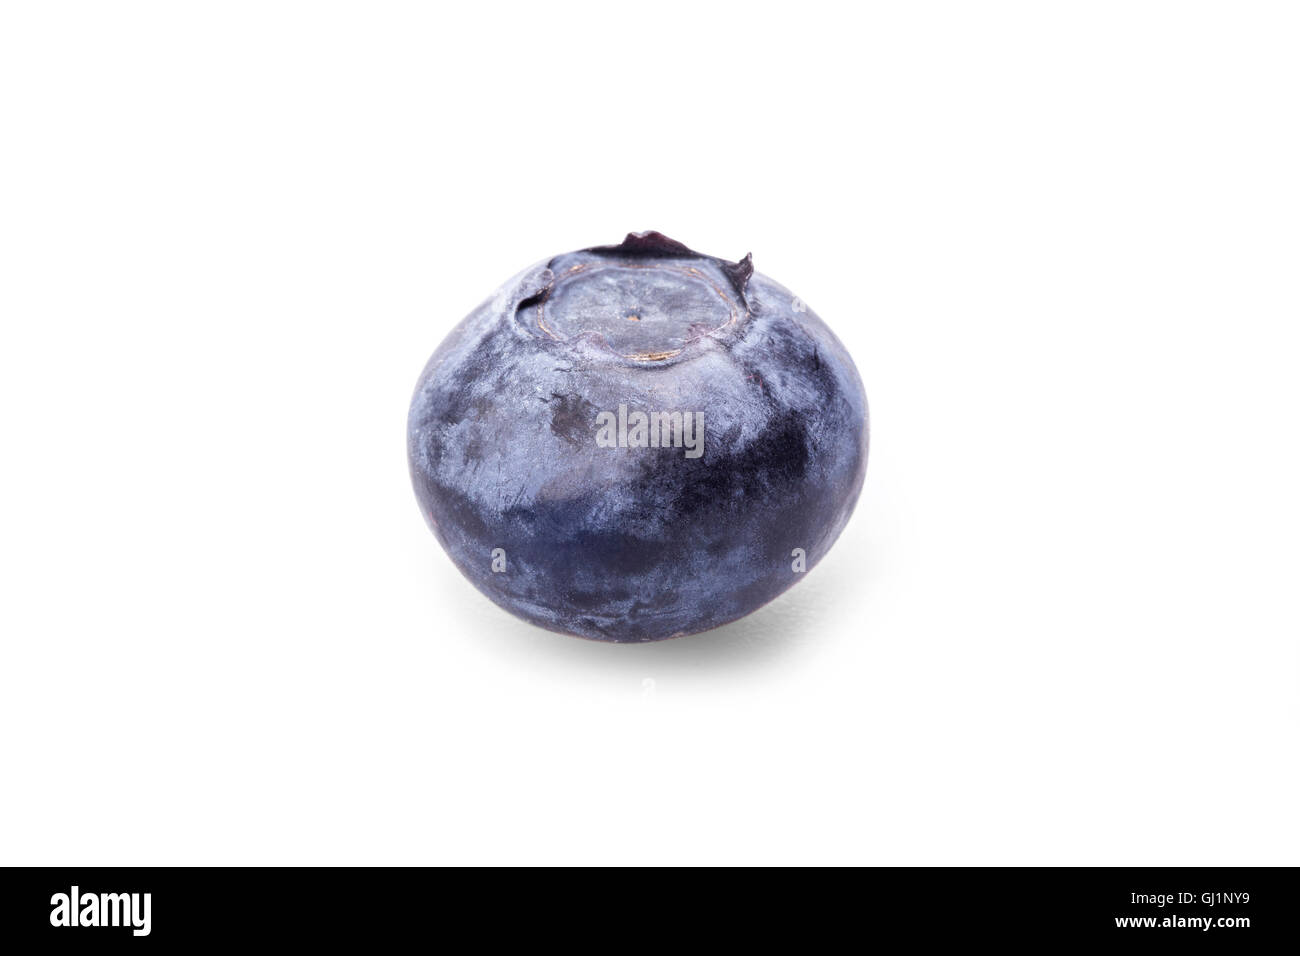 Blueberry on isolated white background. Stock Photo